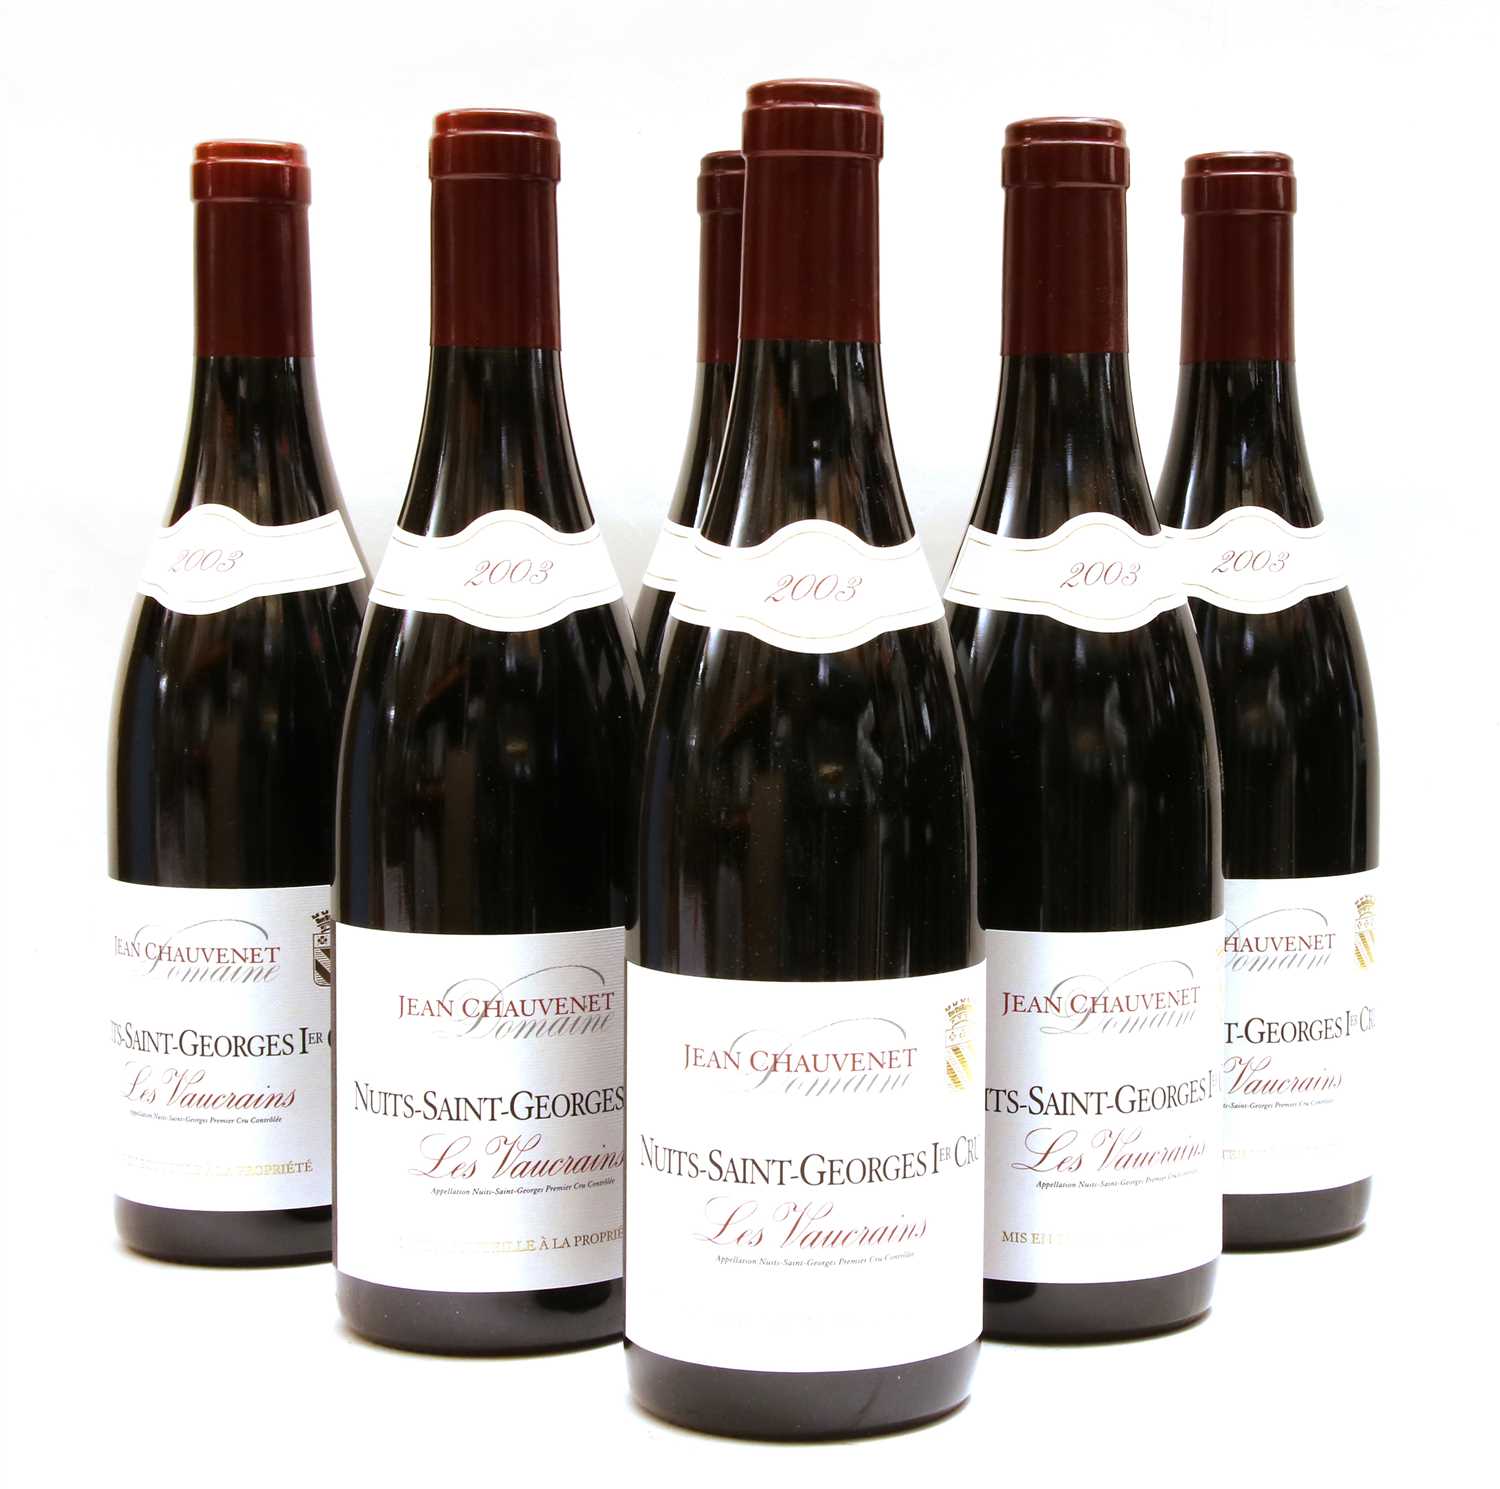 Lot 216 - Domaine Jean Chauvenet, Nuits-Saint-Georges 1er Cru, Les Vaucrains, six bottles (boxed)